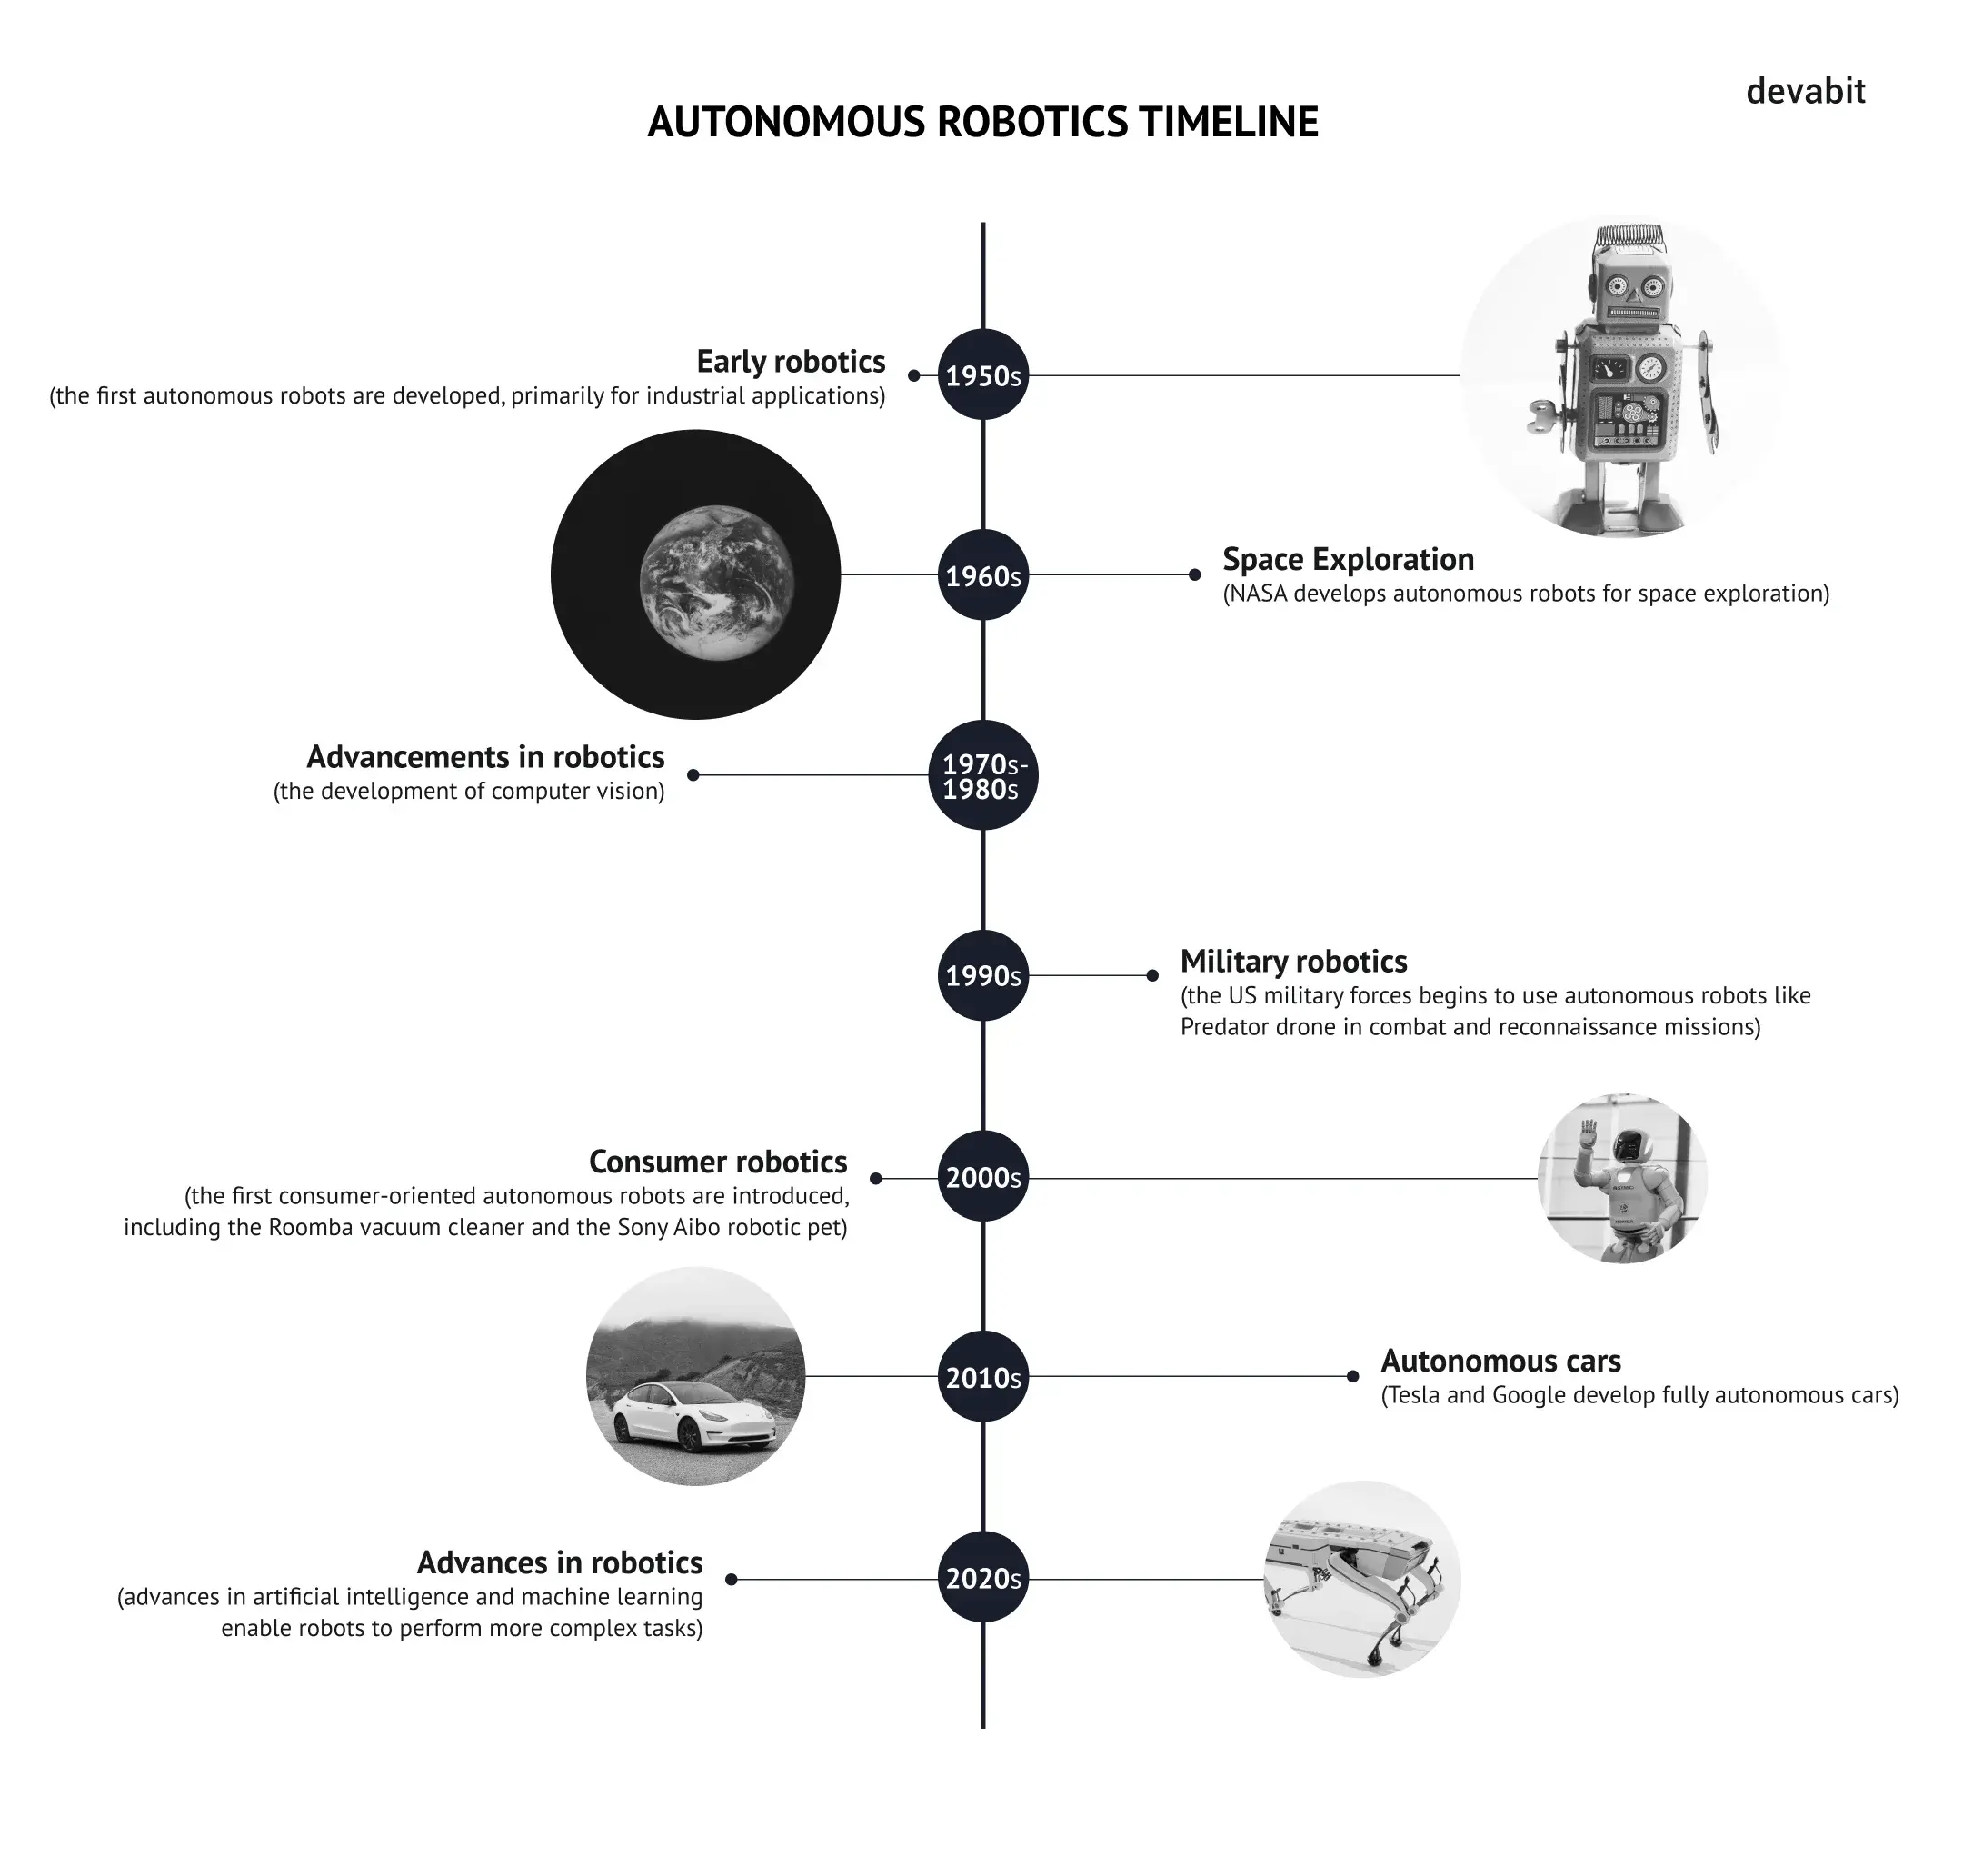 Autonomous robotics timeline by devabit